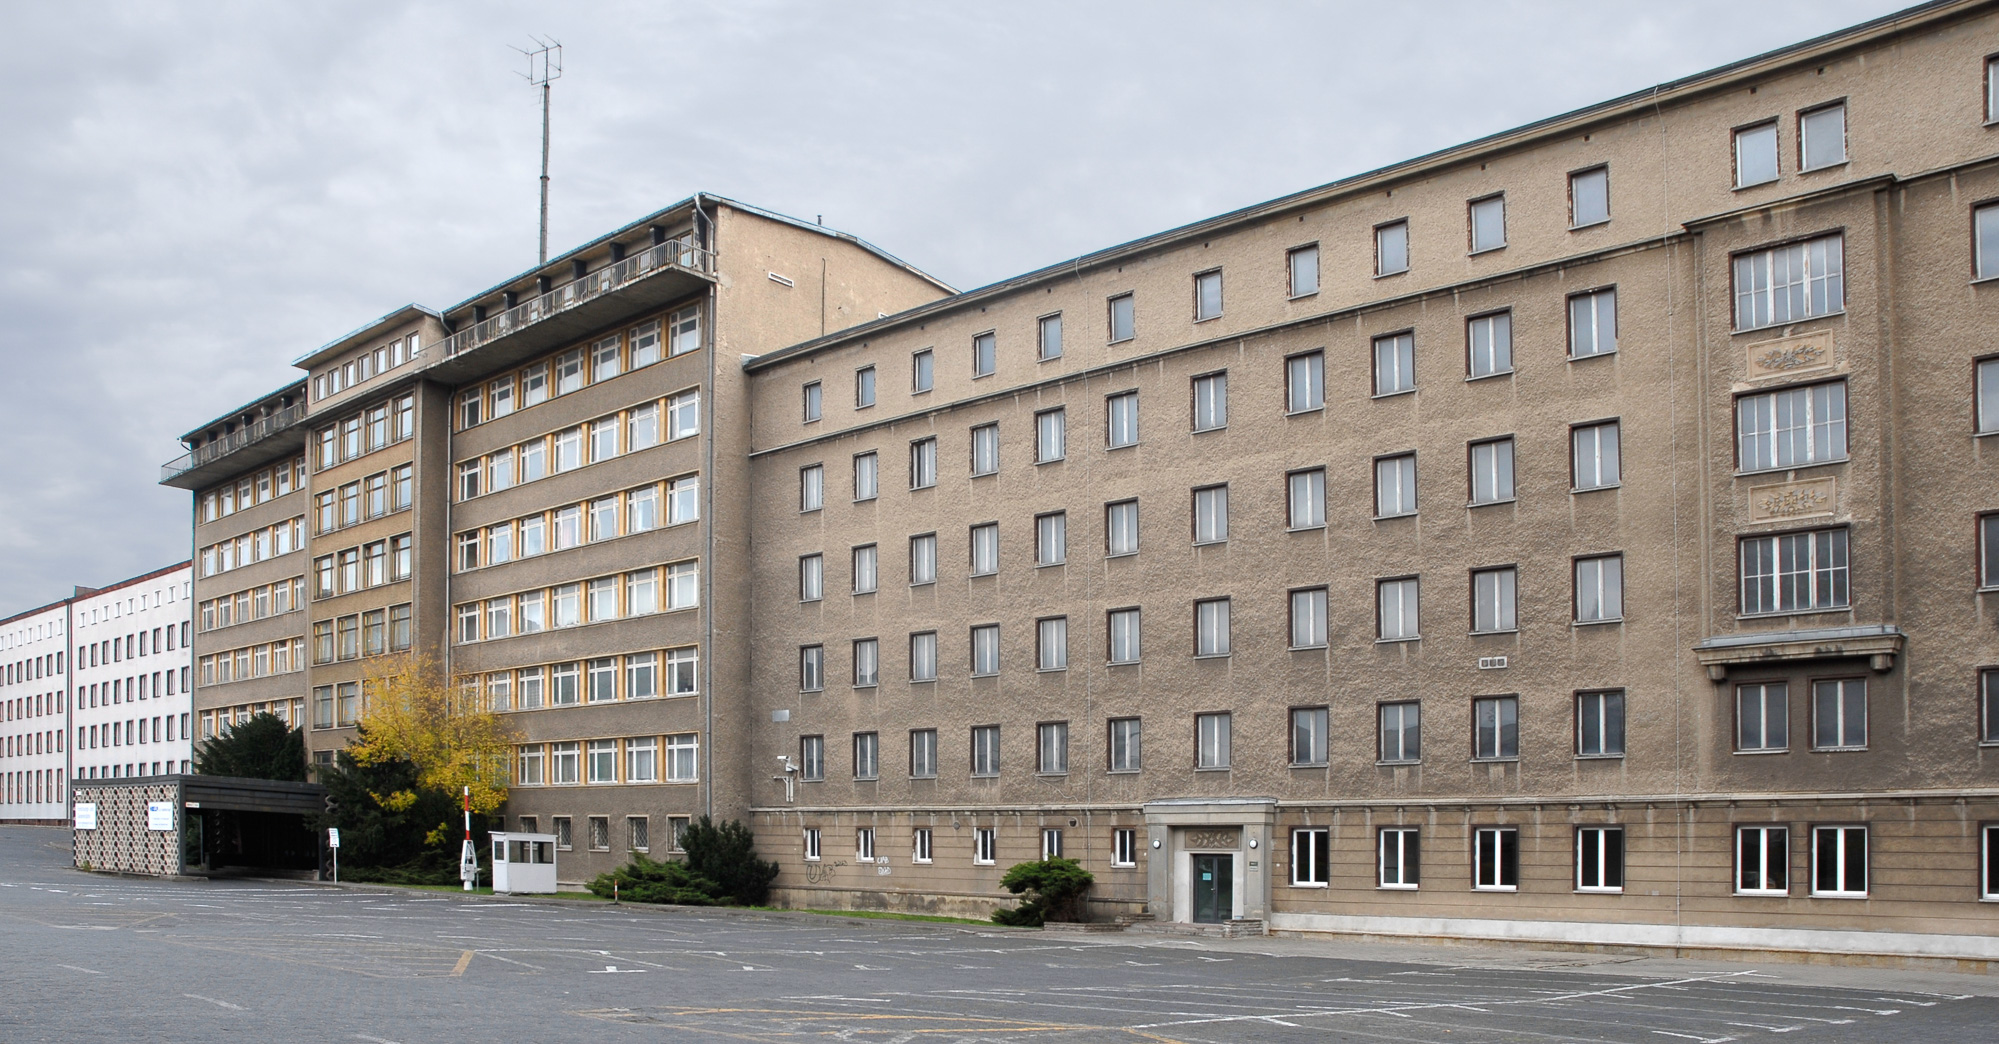 Immeubles de la Stasi la Police secrète de la RDA